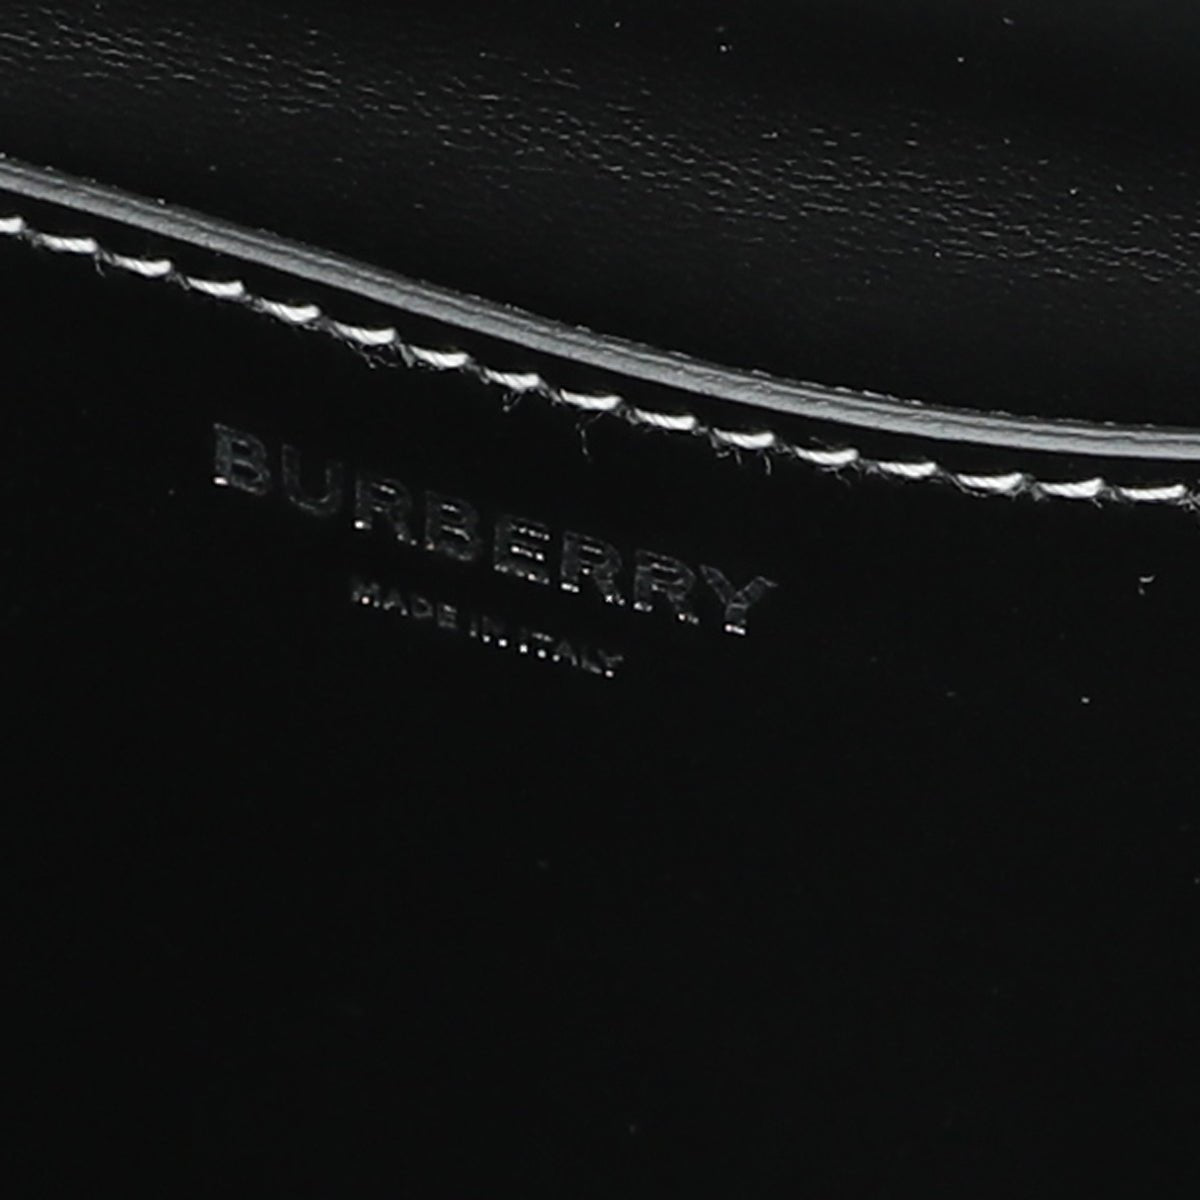 Burberry - Burberry Bicolor Denim Logo Graphic Note Crossbody Bag | The Closet